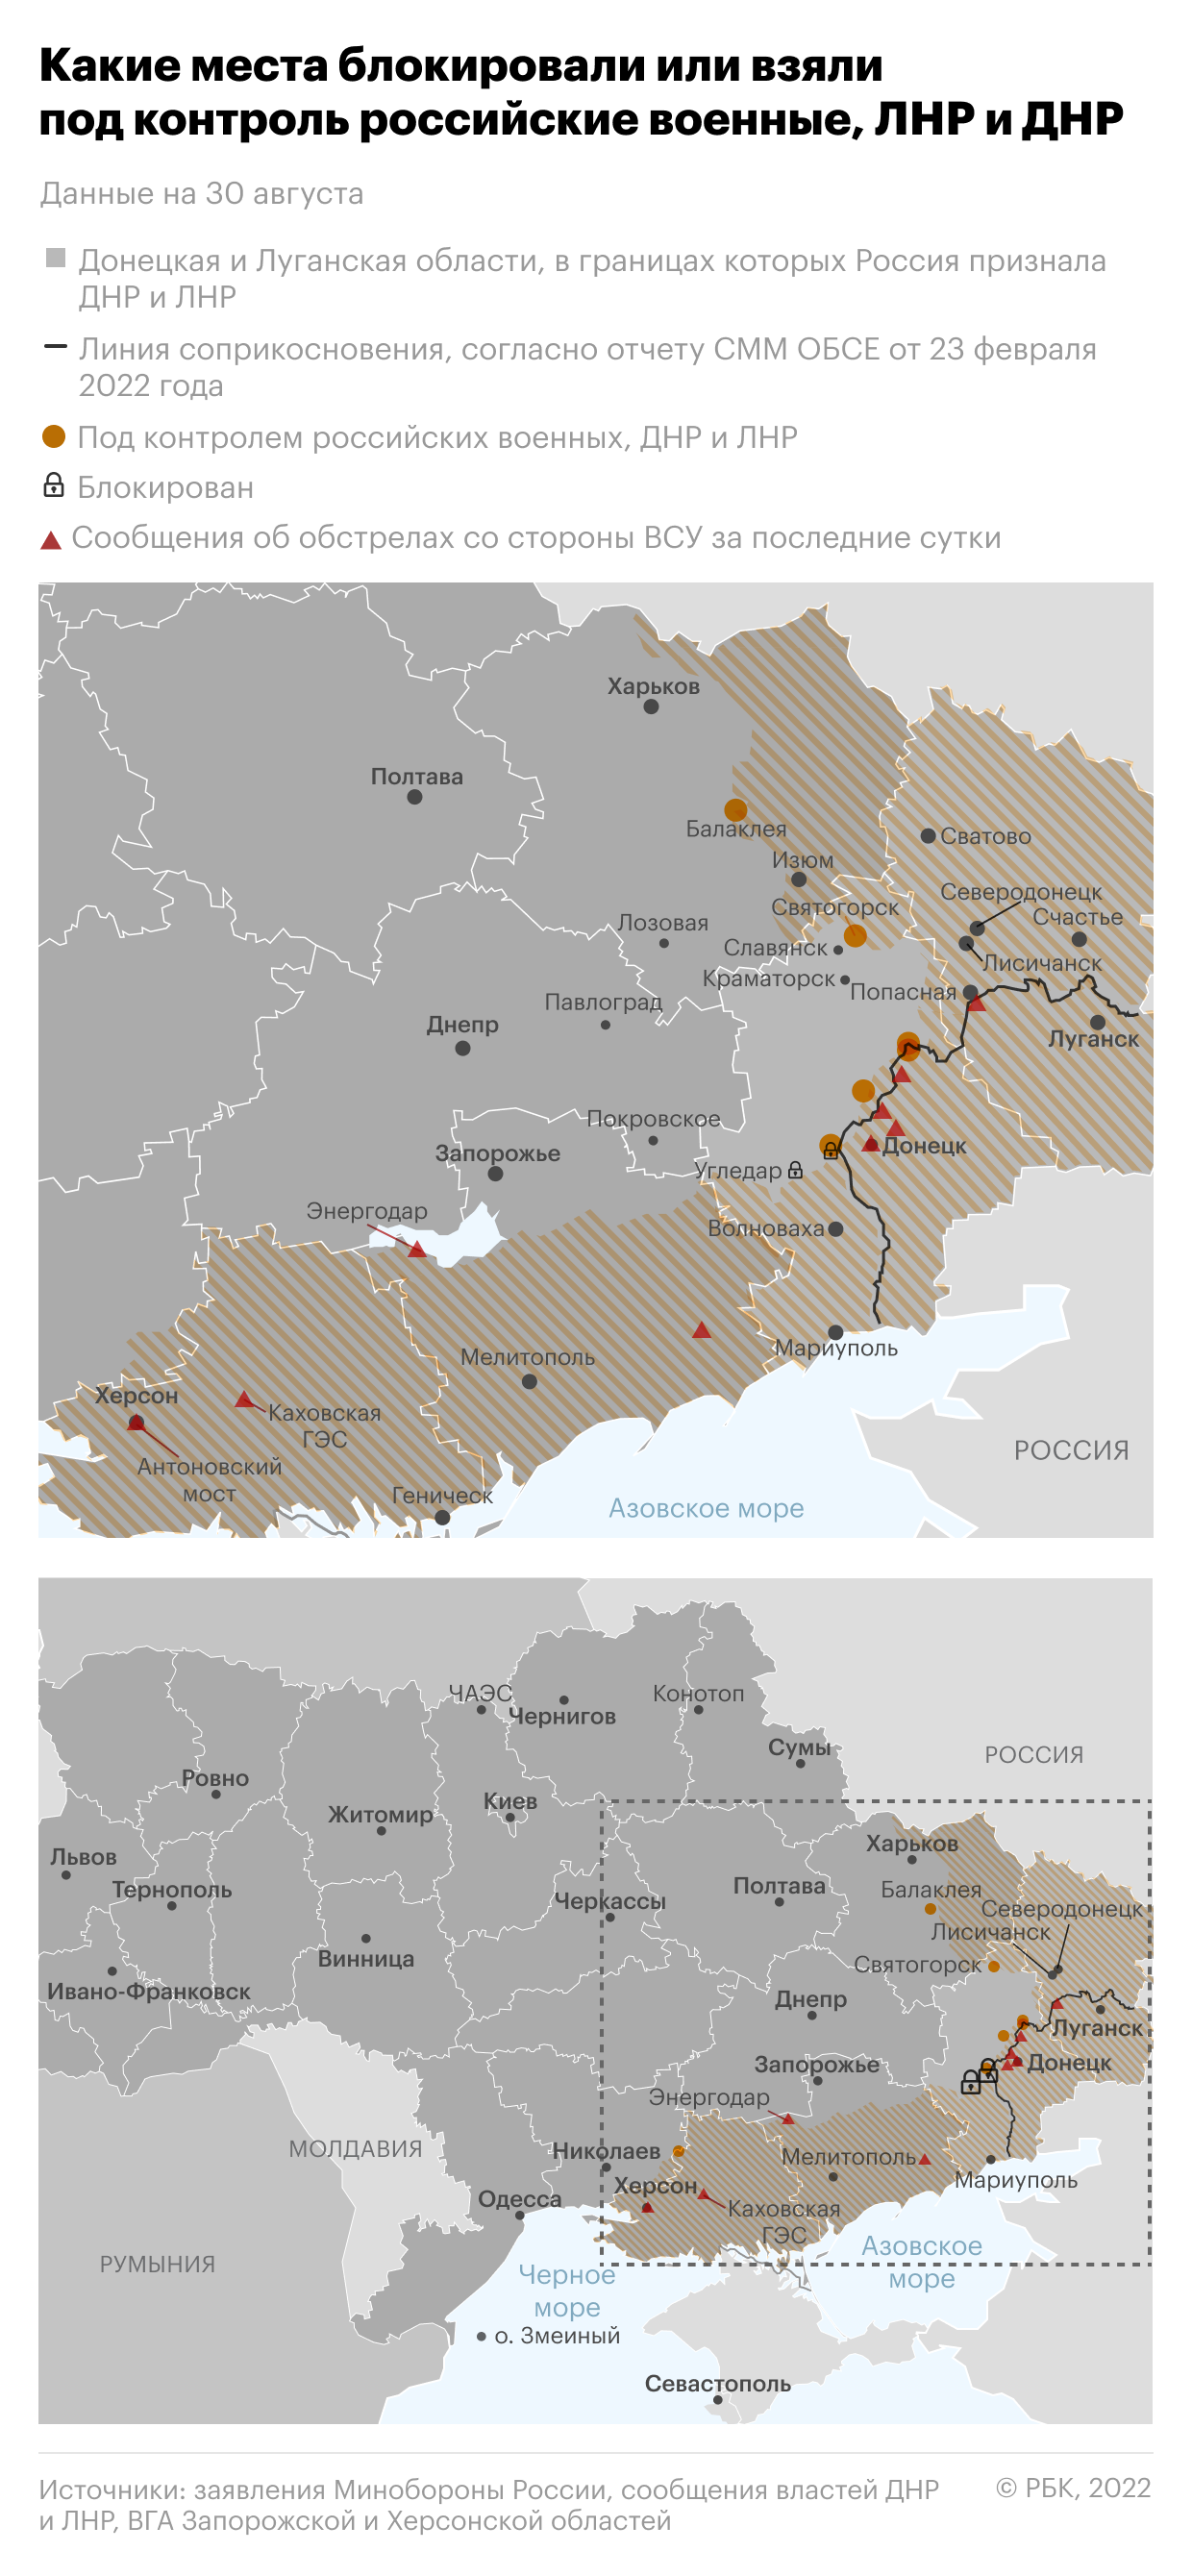 В Забайкалье создадут батальон саперов для участия в операции на Украине"/>













